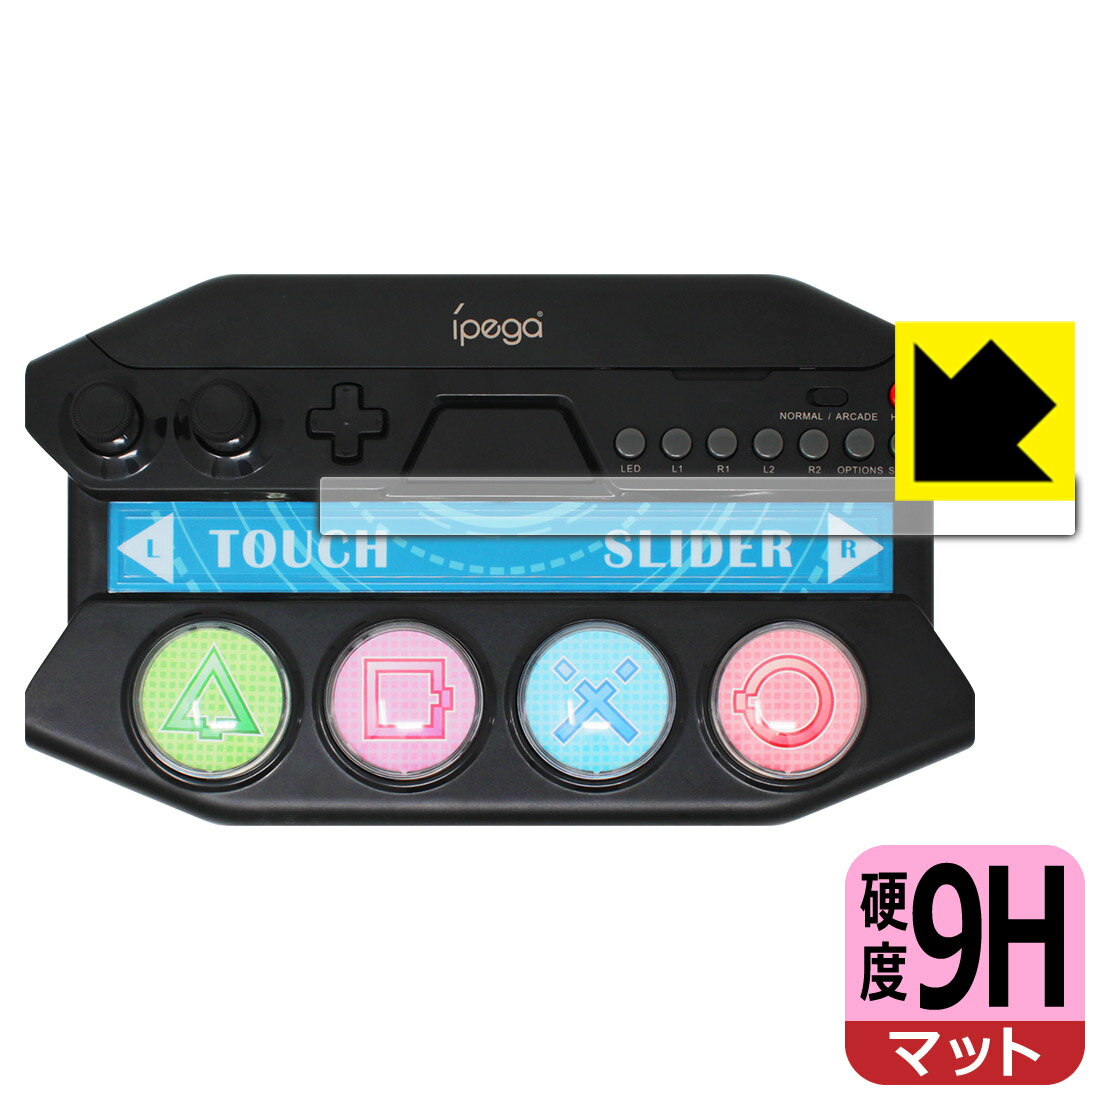 PEGA GAME ミニコントローラー P4016 用 9H高硬度【反射低減】保護フィルム 日本製 自社製造直販